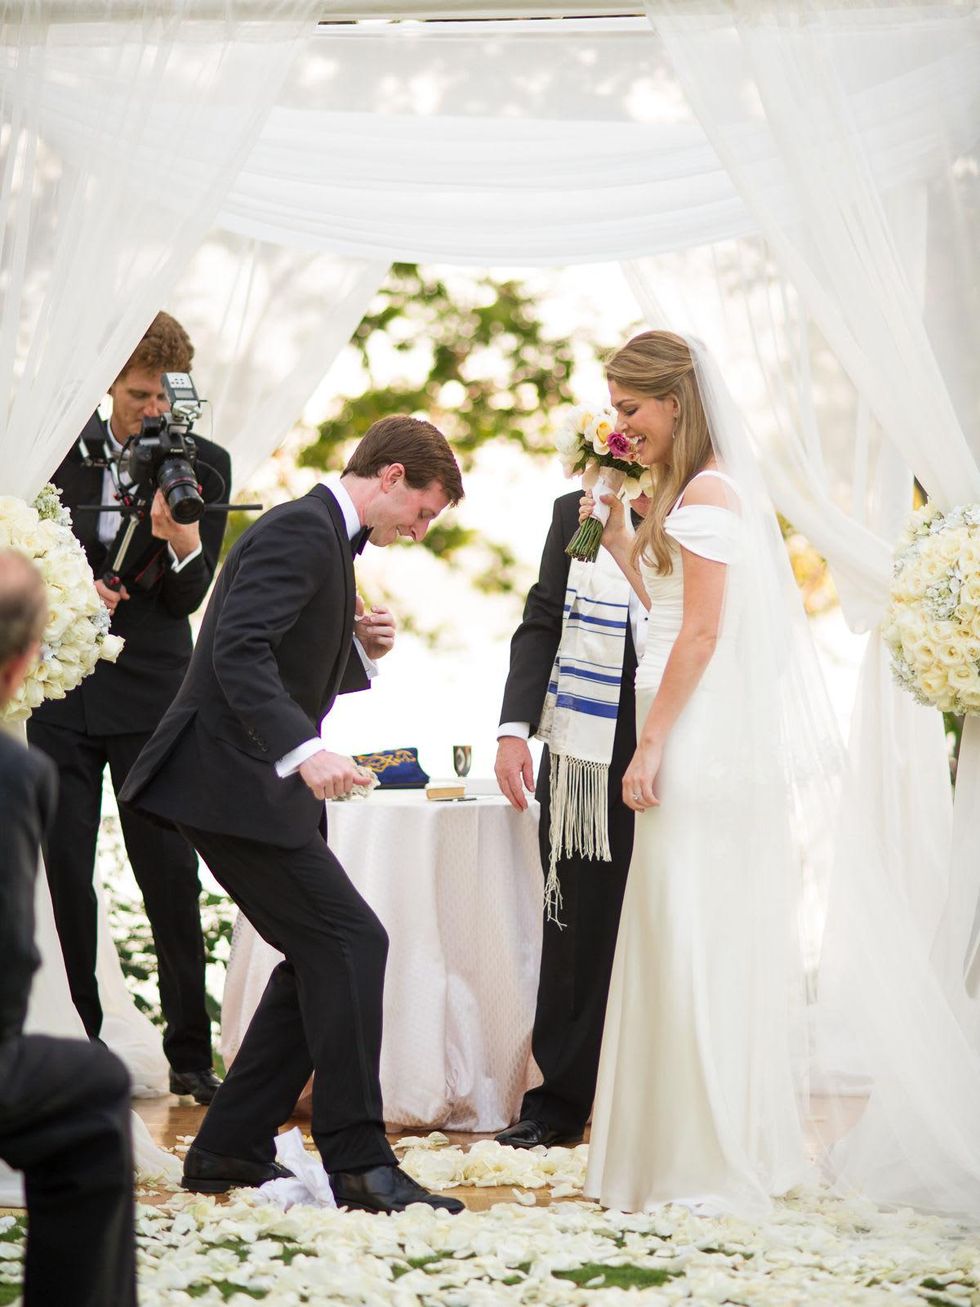 50, Wonderful Weddings, Brittany Sakowitz and Kevin Kushner, February 2013